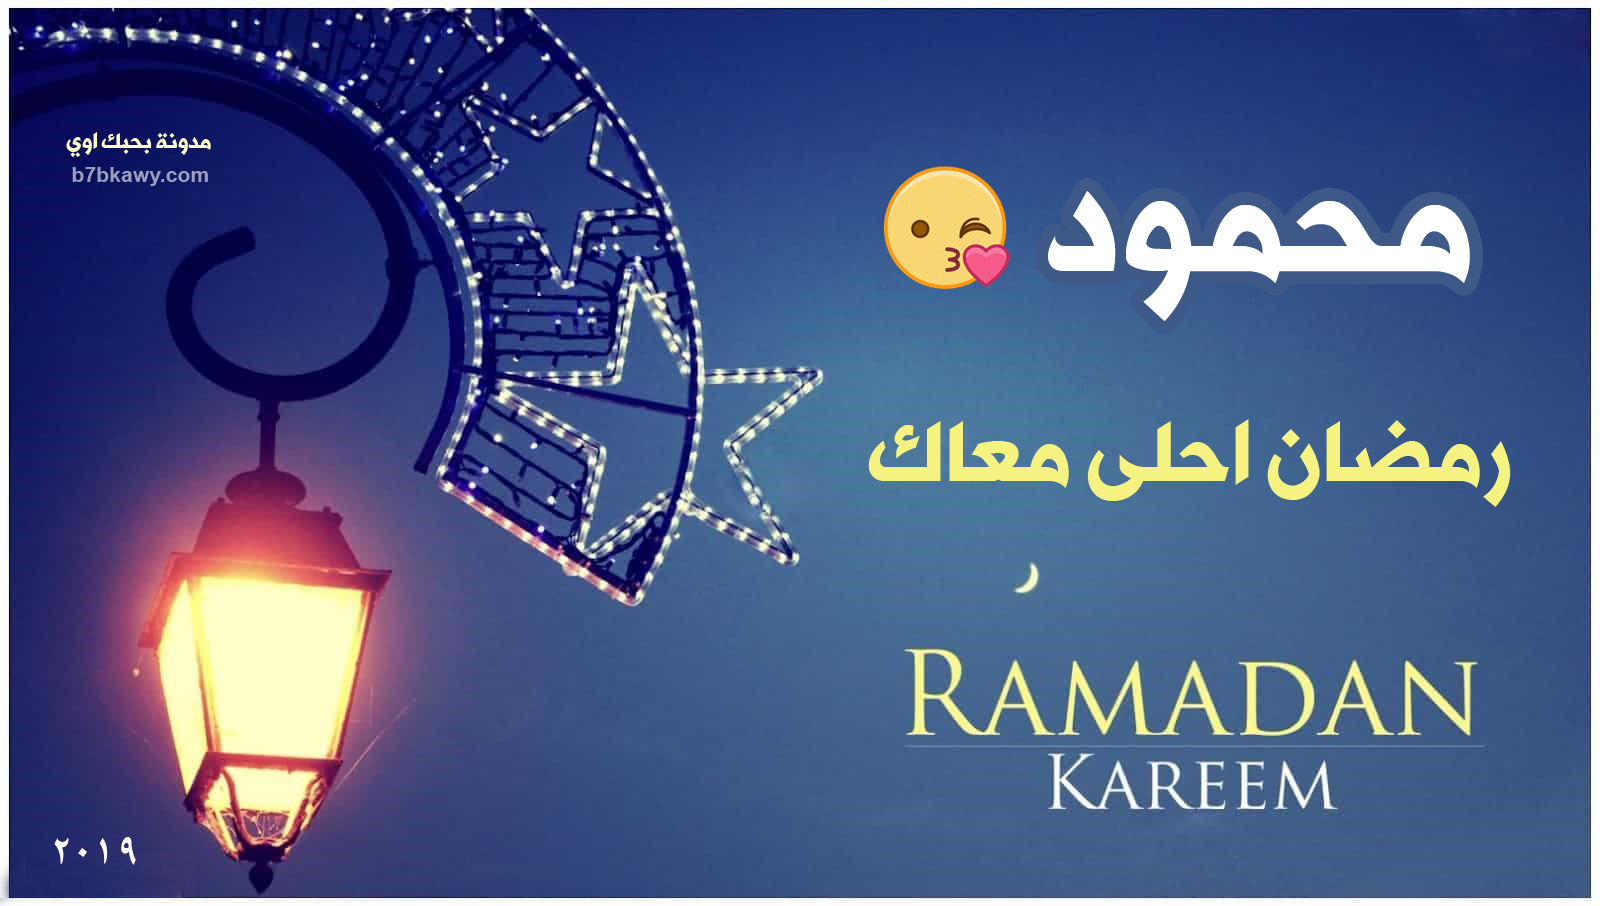 اجمل صور رمضان احلى مع احمد محمود محمد جنى امي 2020